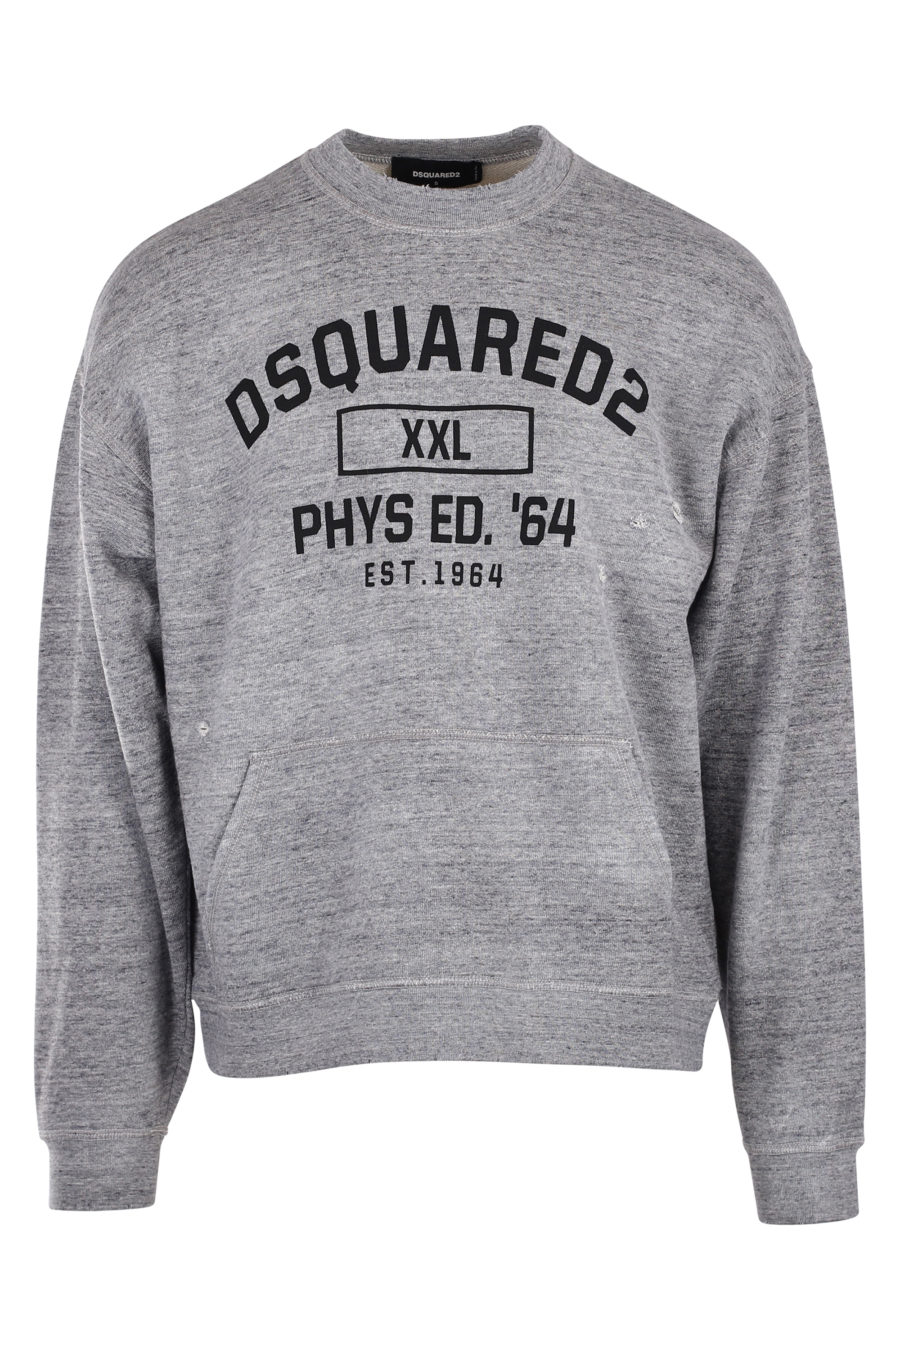 Camisola cinzenta com o logótipo "phys ed 64" a preto - IMG 9950